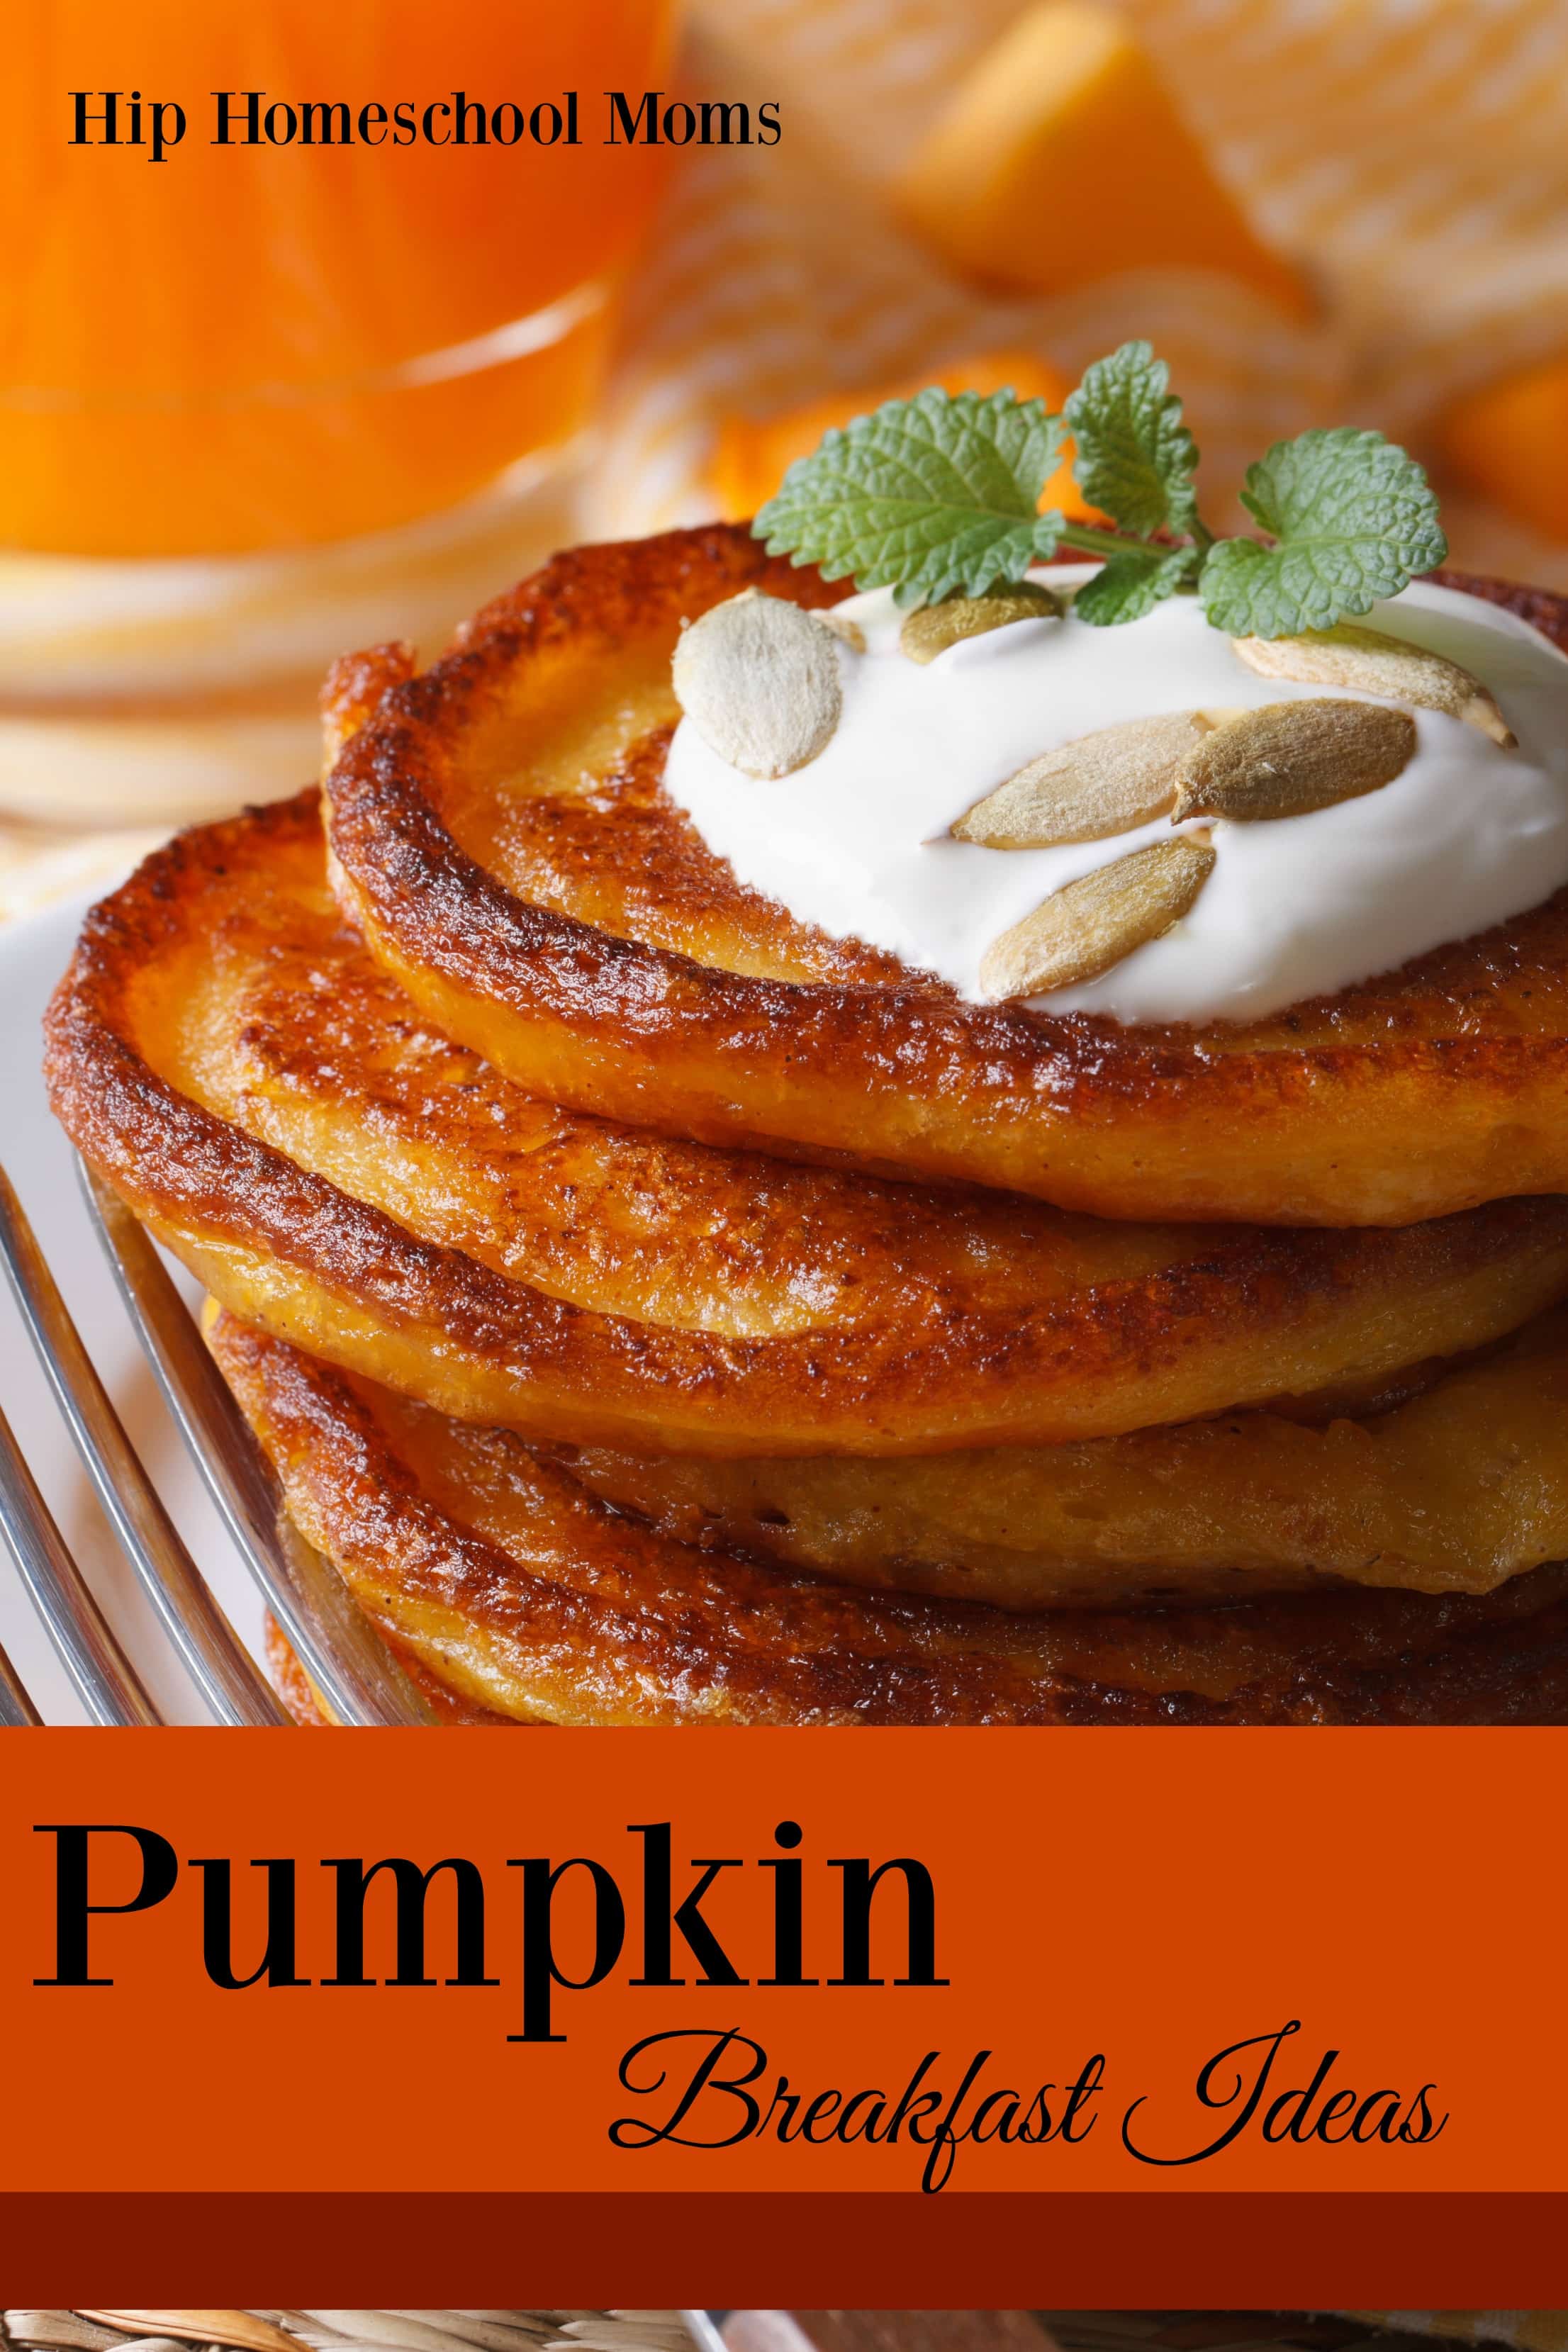 Pumpkin Breakfast Ideas